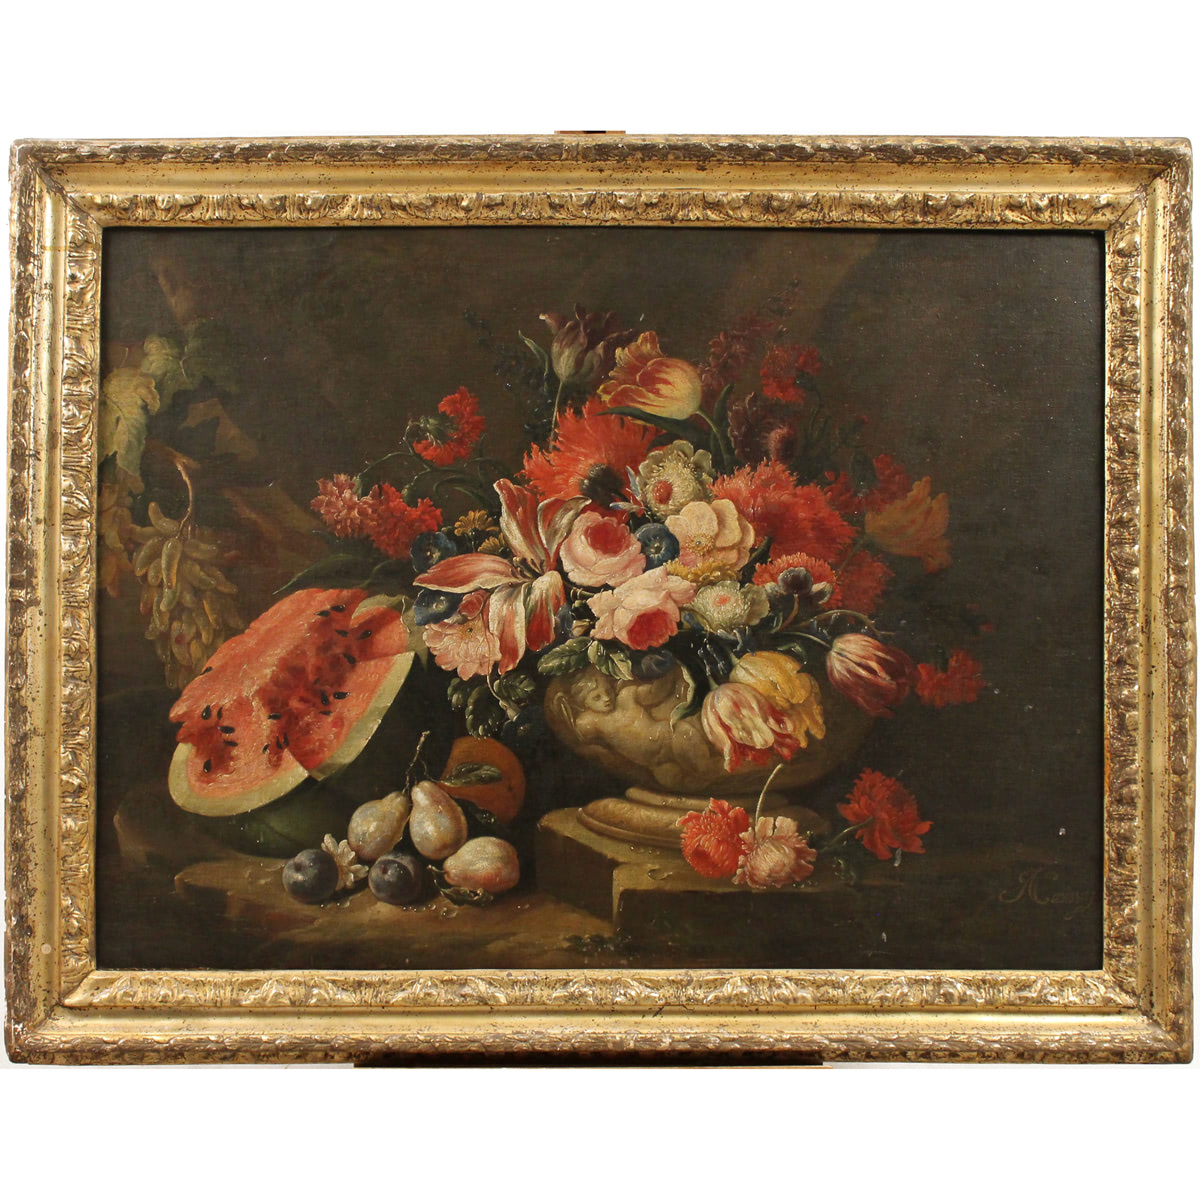 Nicola Casissa (1680/1731) "Natura morta di fiori e frutta" - "Still life of flowers and fruit"